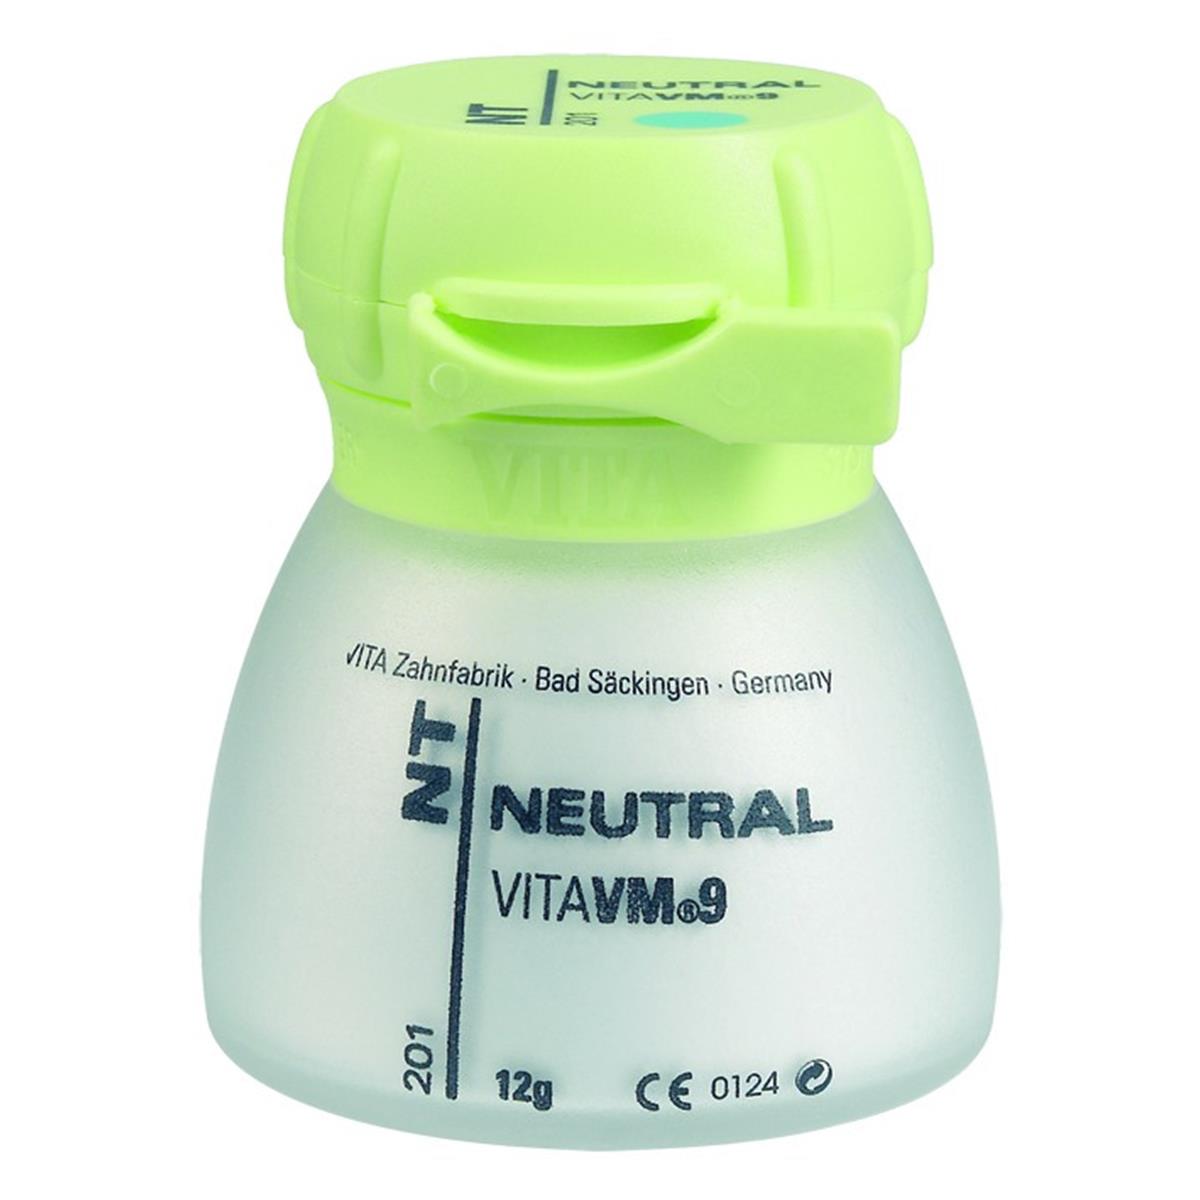 VM9 VITA - Neutral - NT - Le pot de 250 g